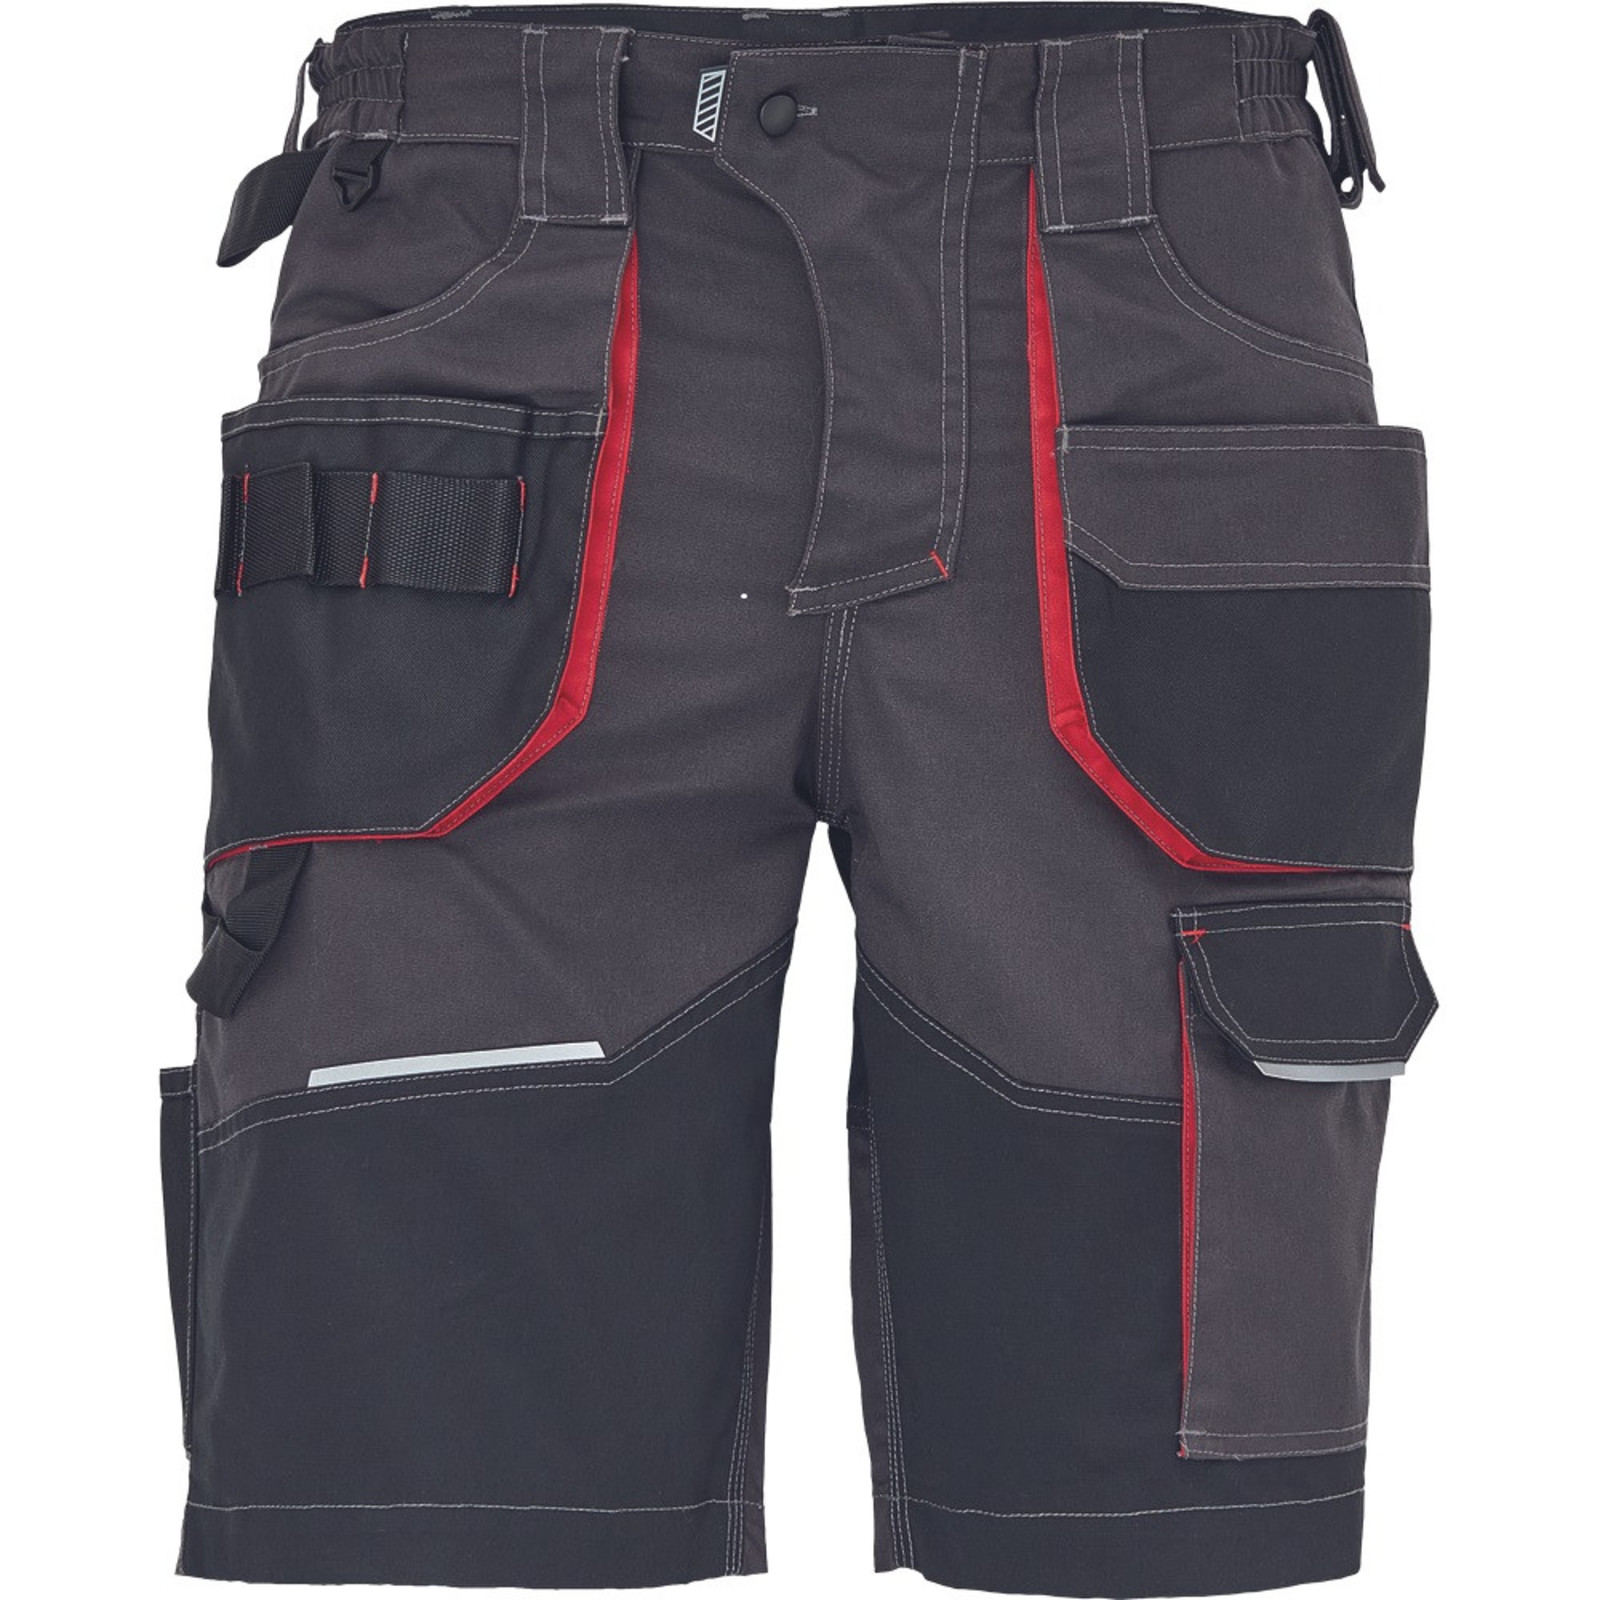 Pánske pracovné šortky SafeWorker Reusel - veľkosť: 56, farba: antracit/červená